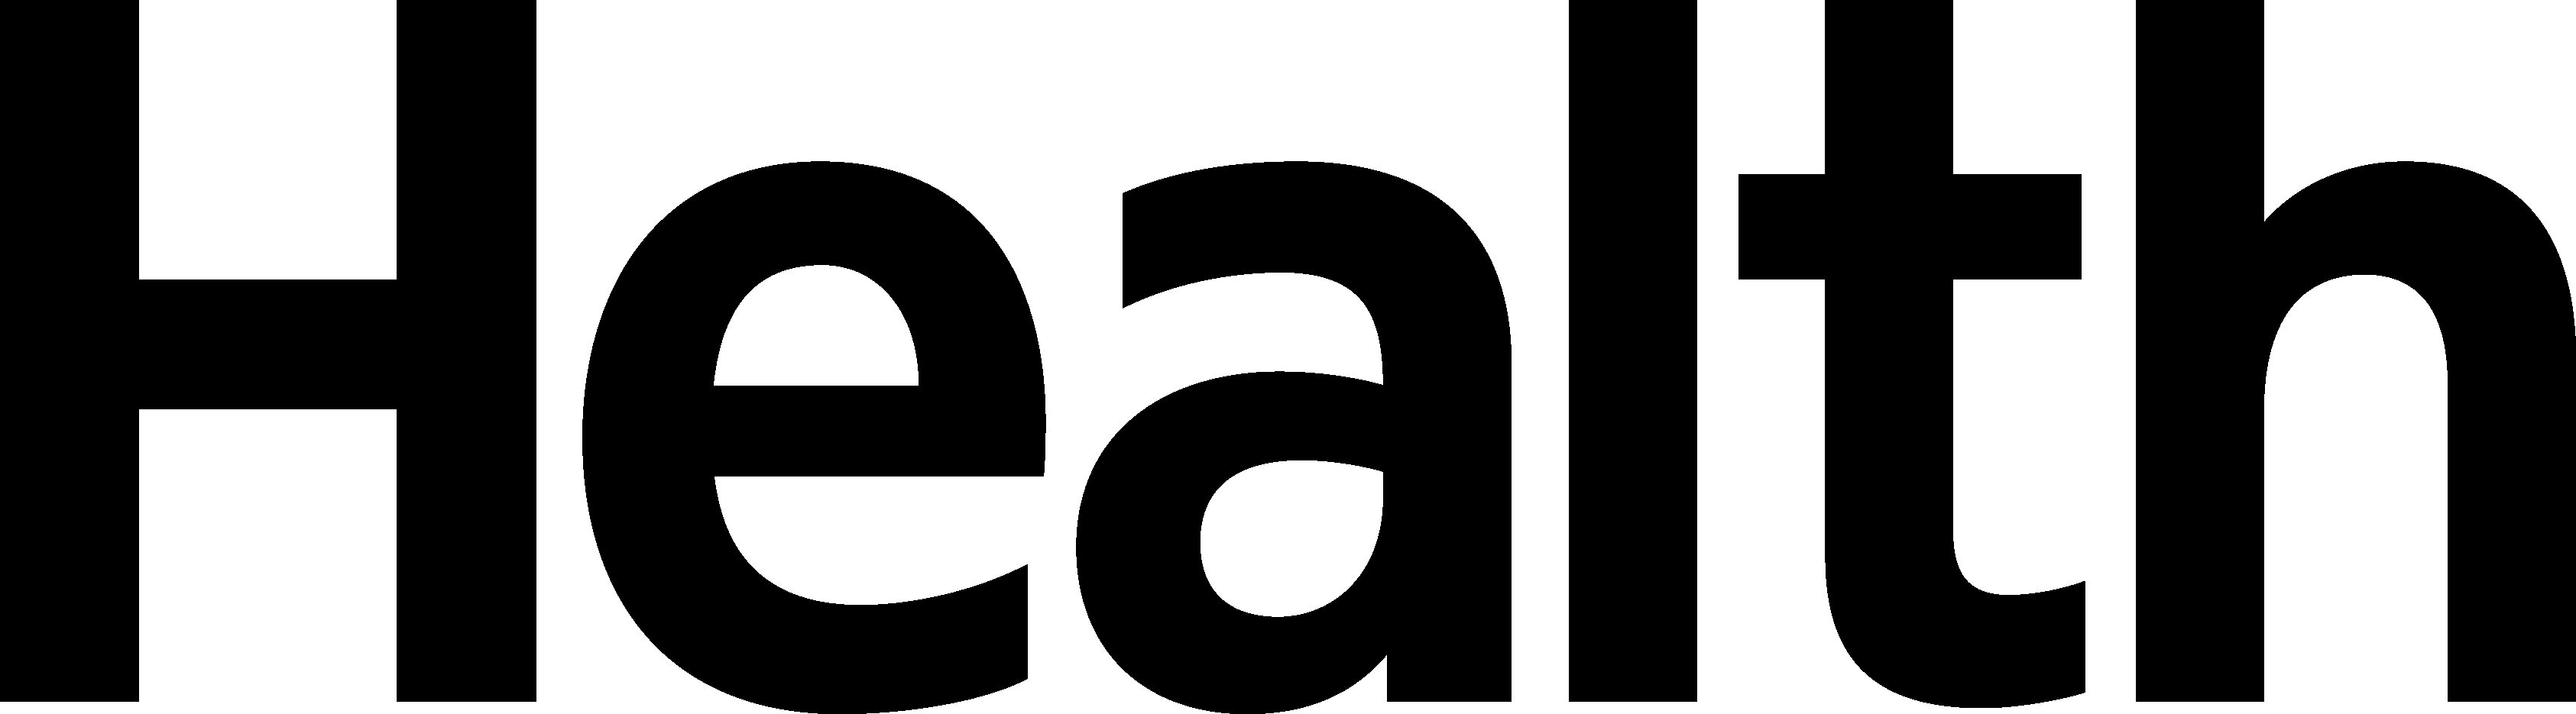 Healt logo